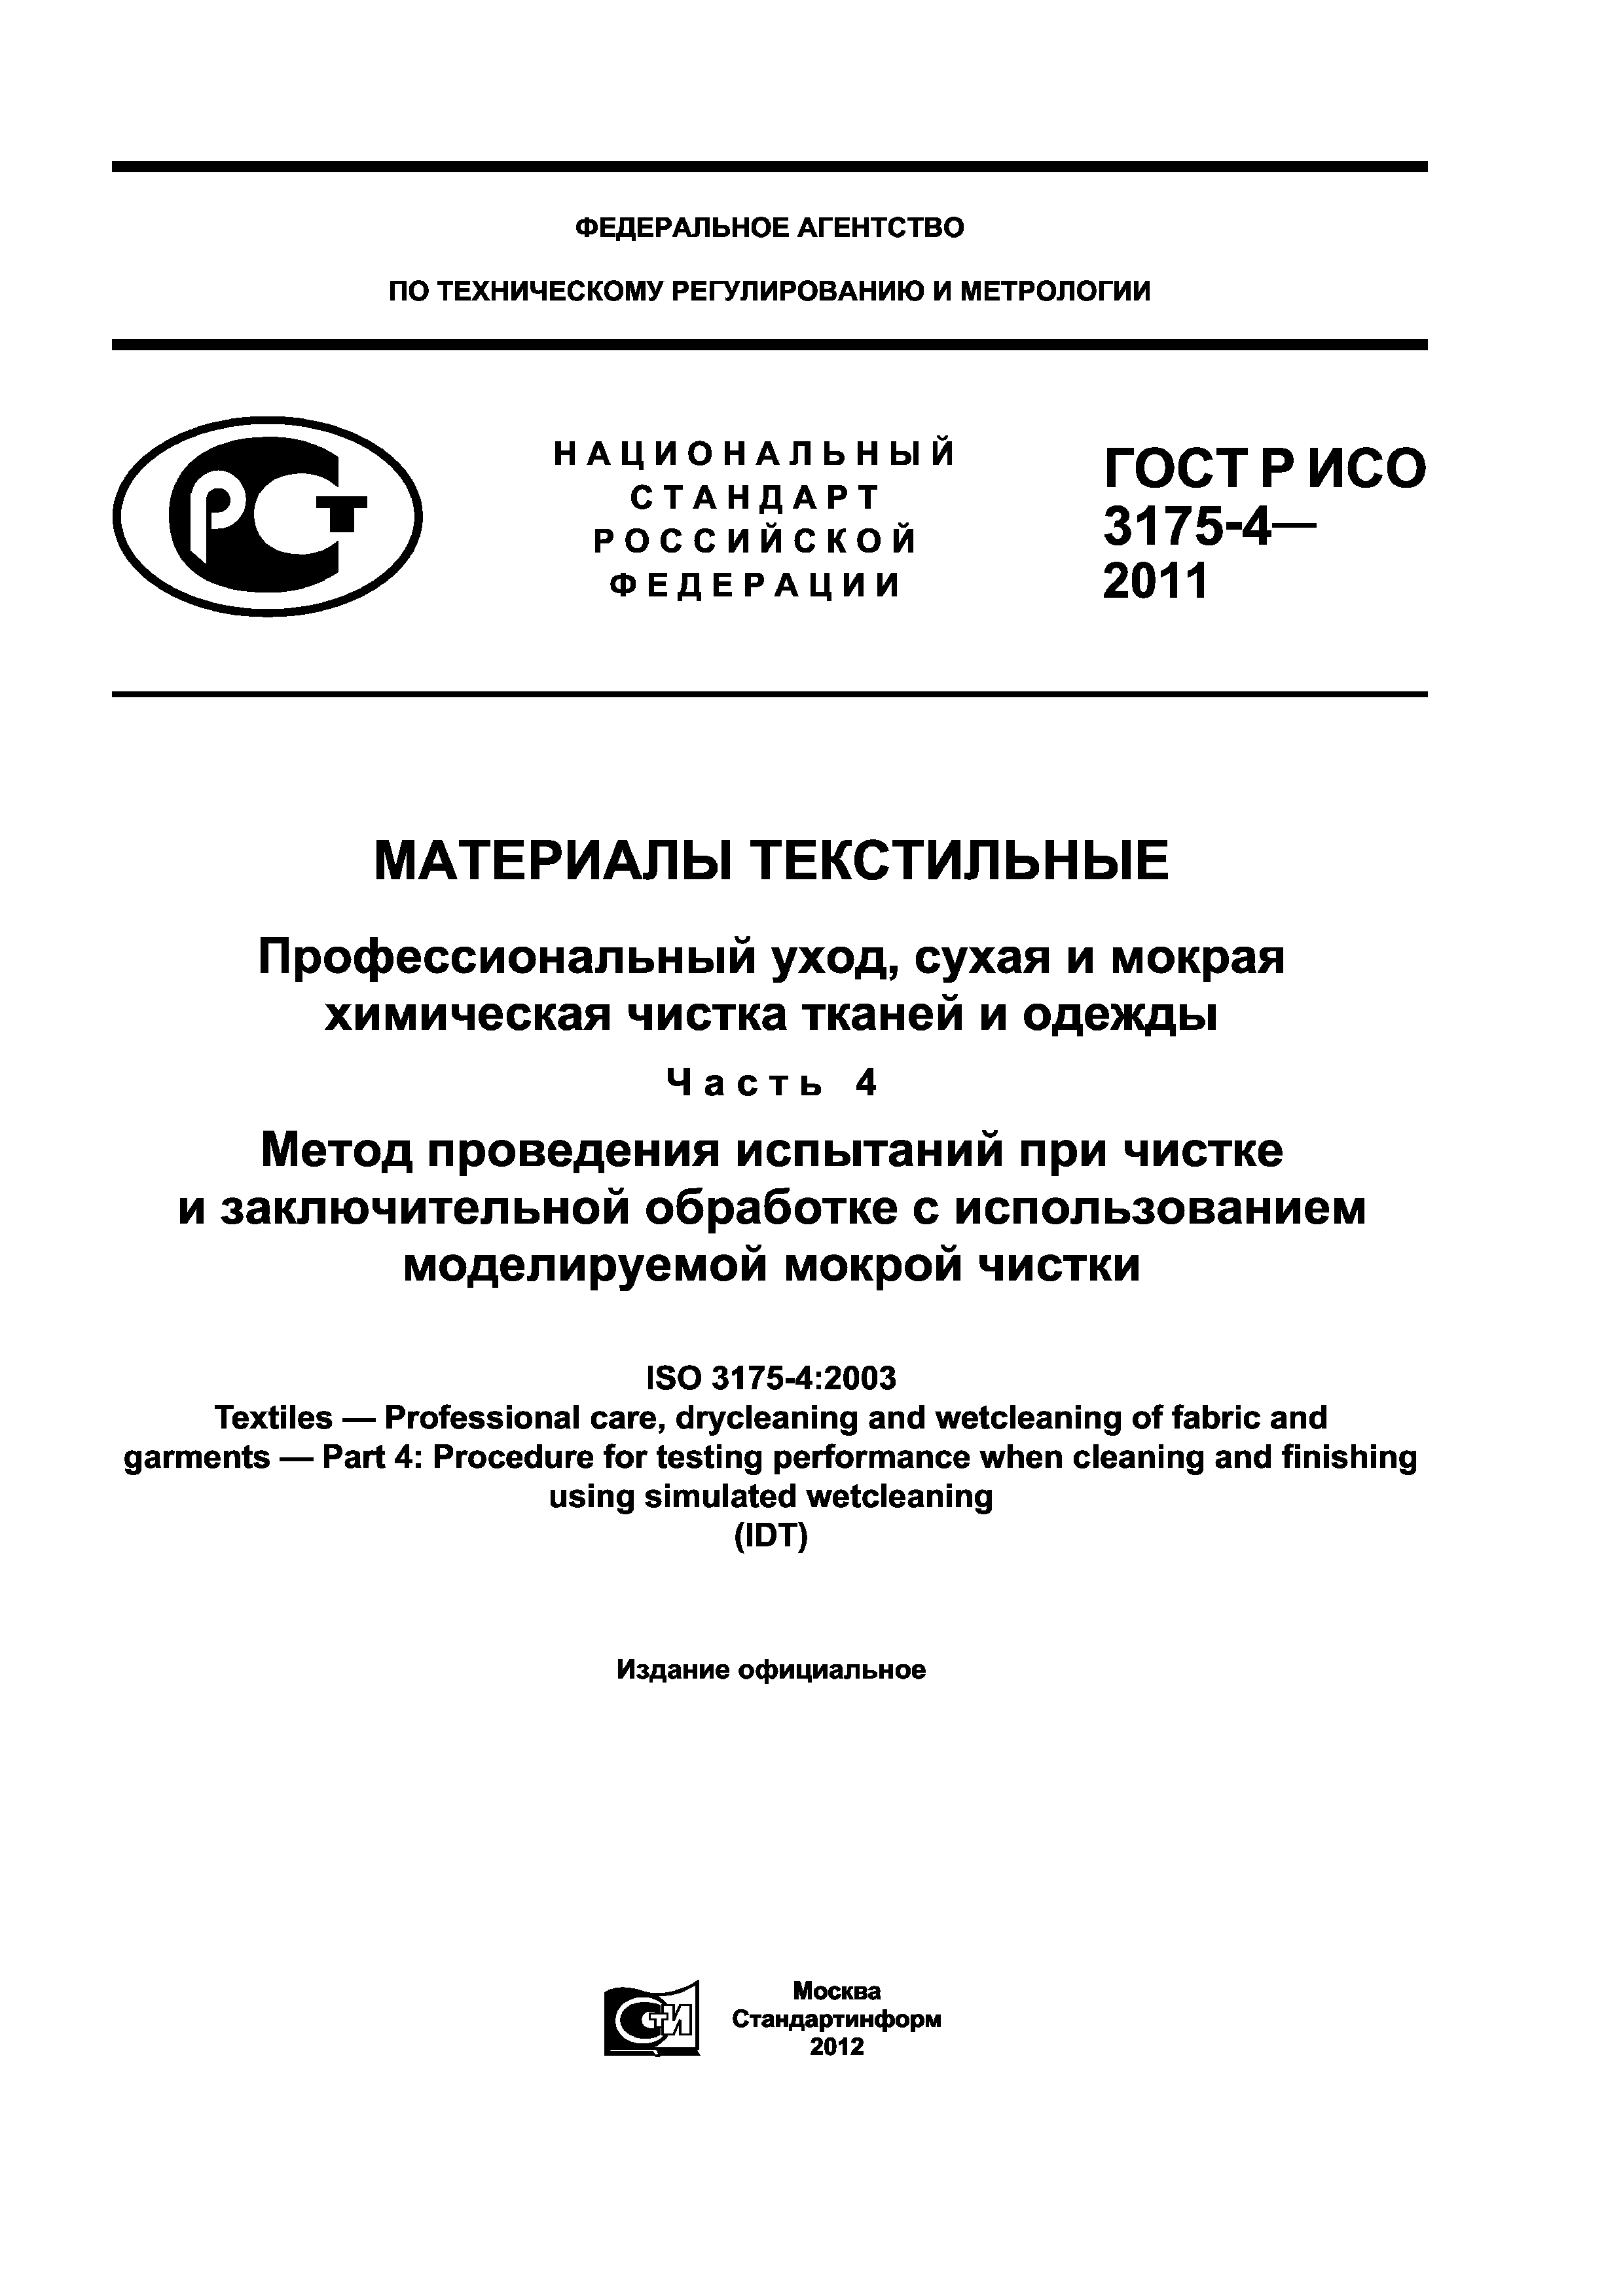 ГОСТ Р ИСО 3175-4-2011